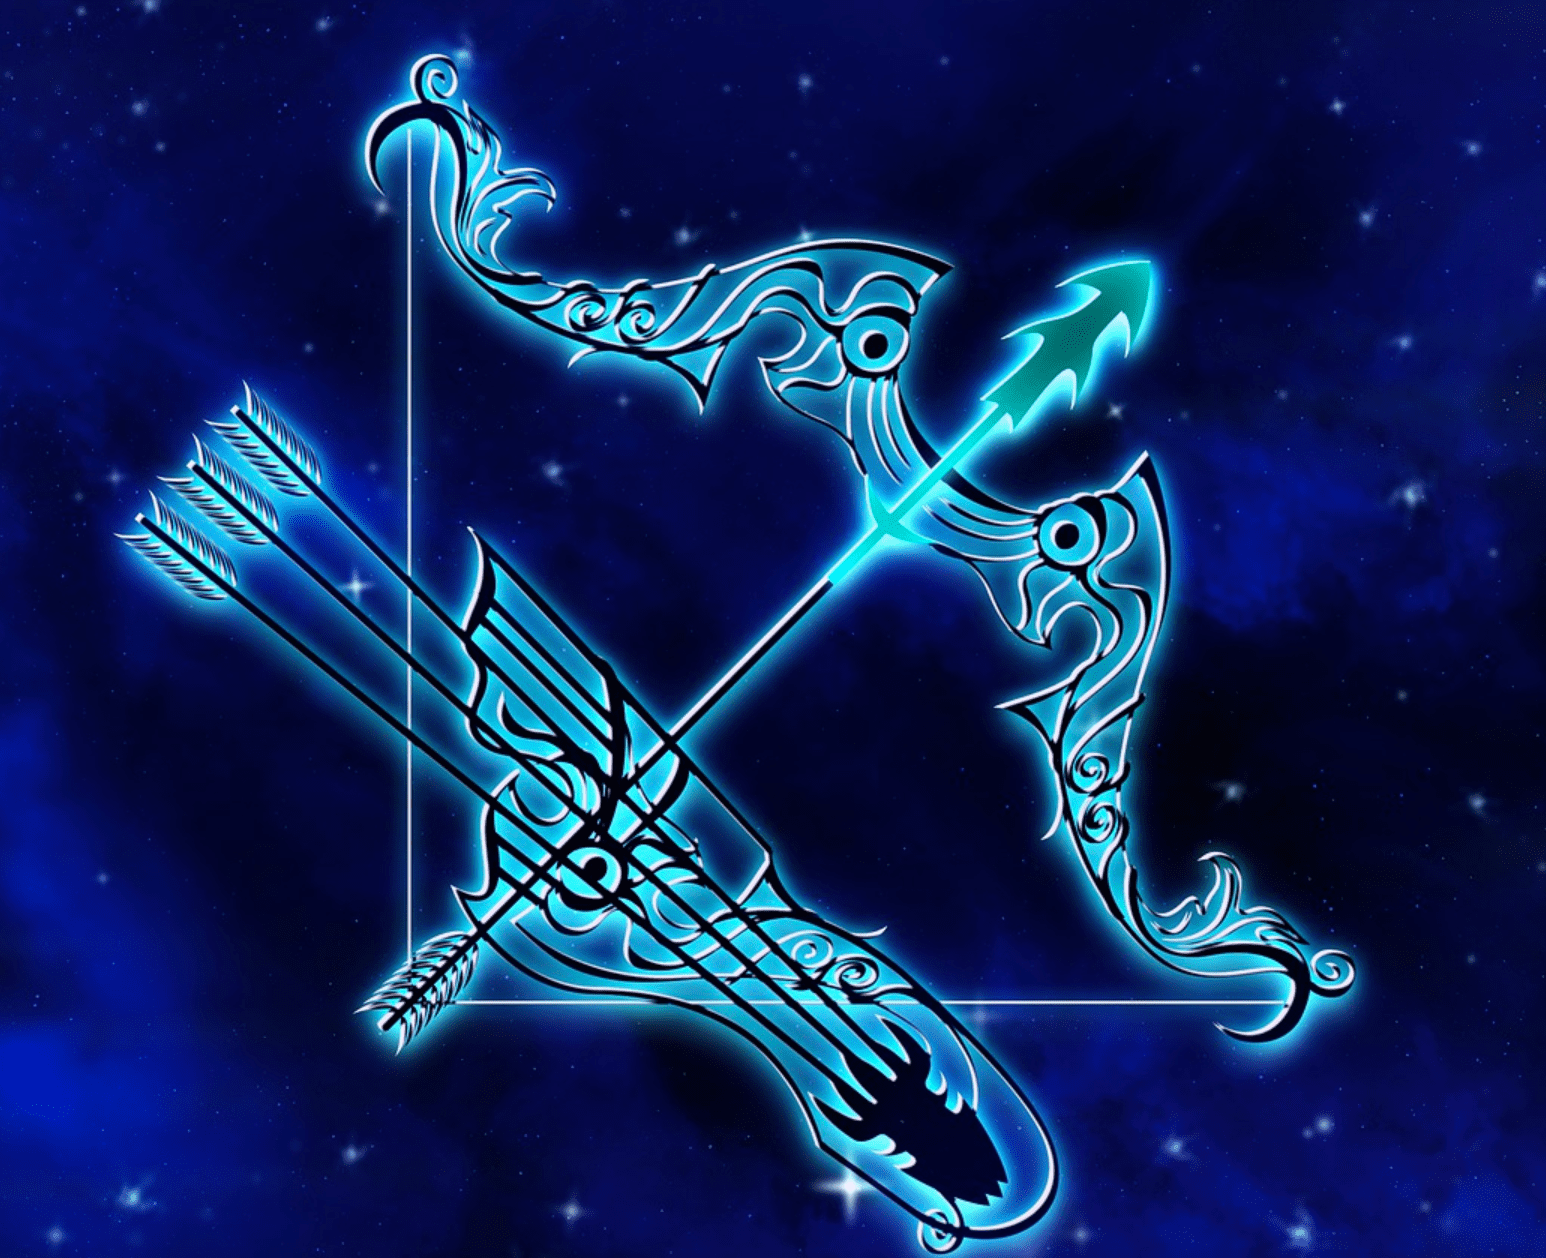 An illustration of the Sagittarius zodiac sign | Photo: Pixabay/Darkmoon_Art 